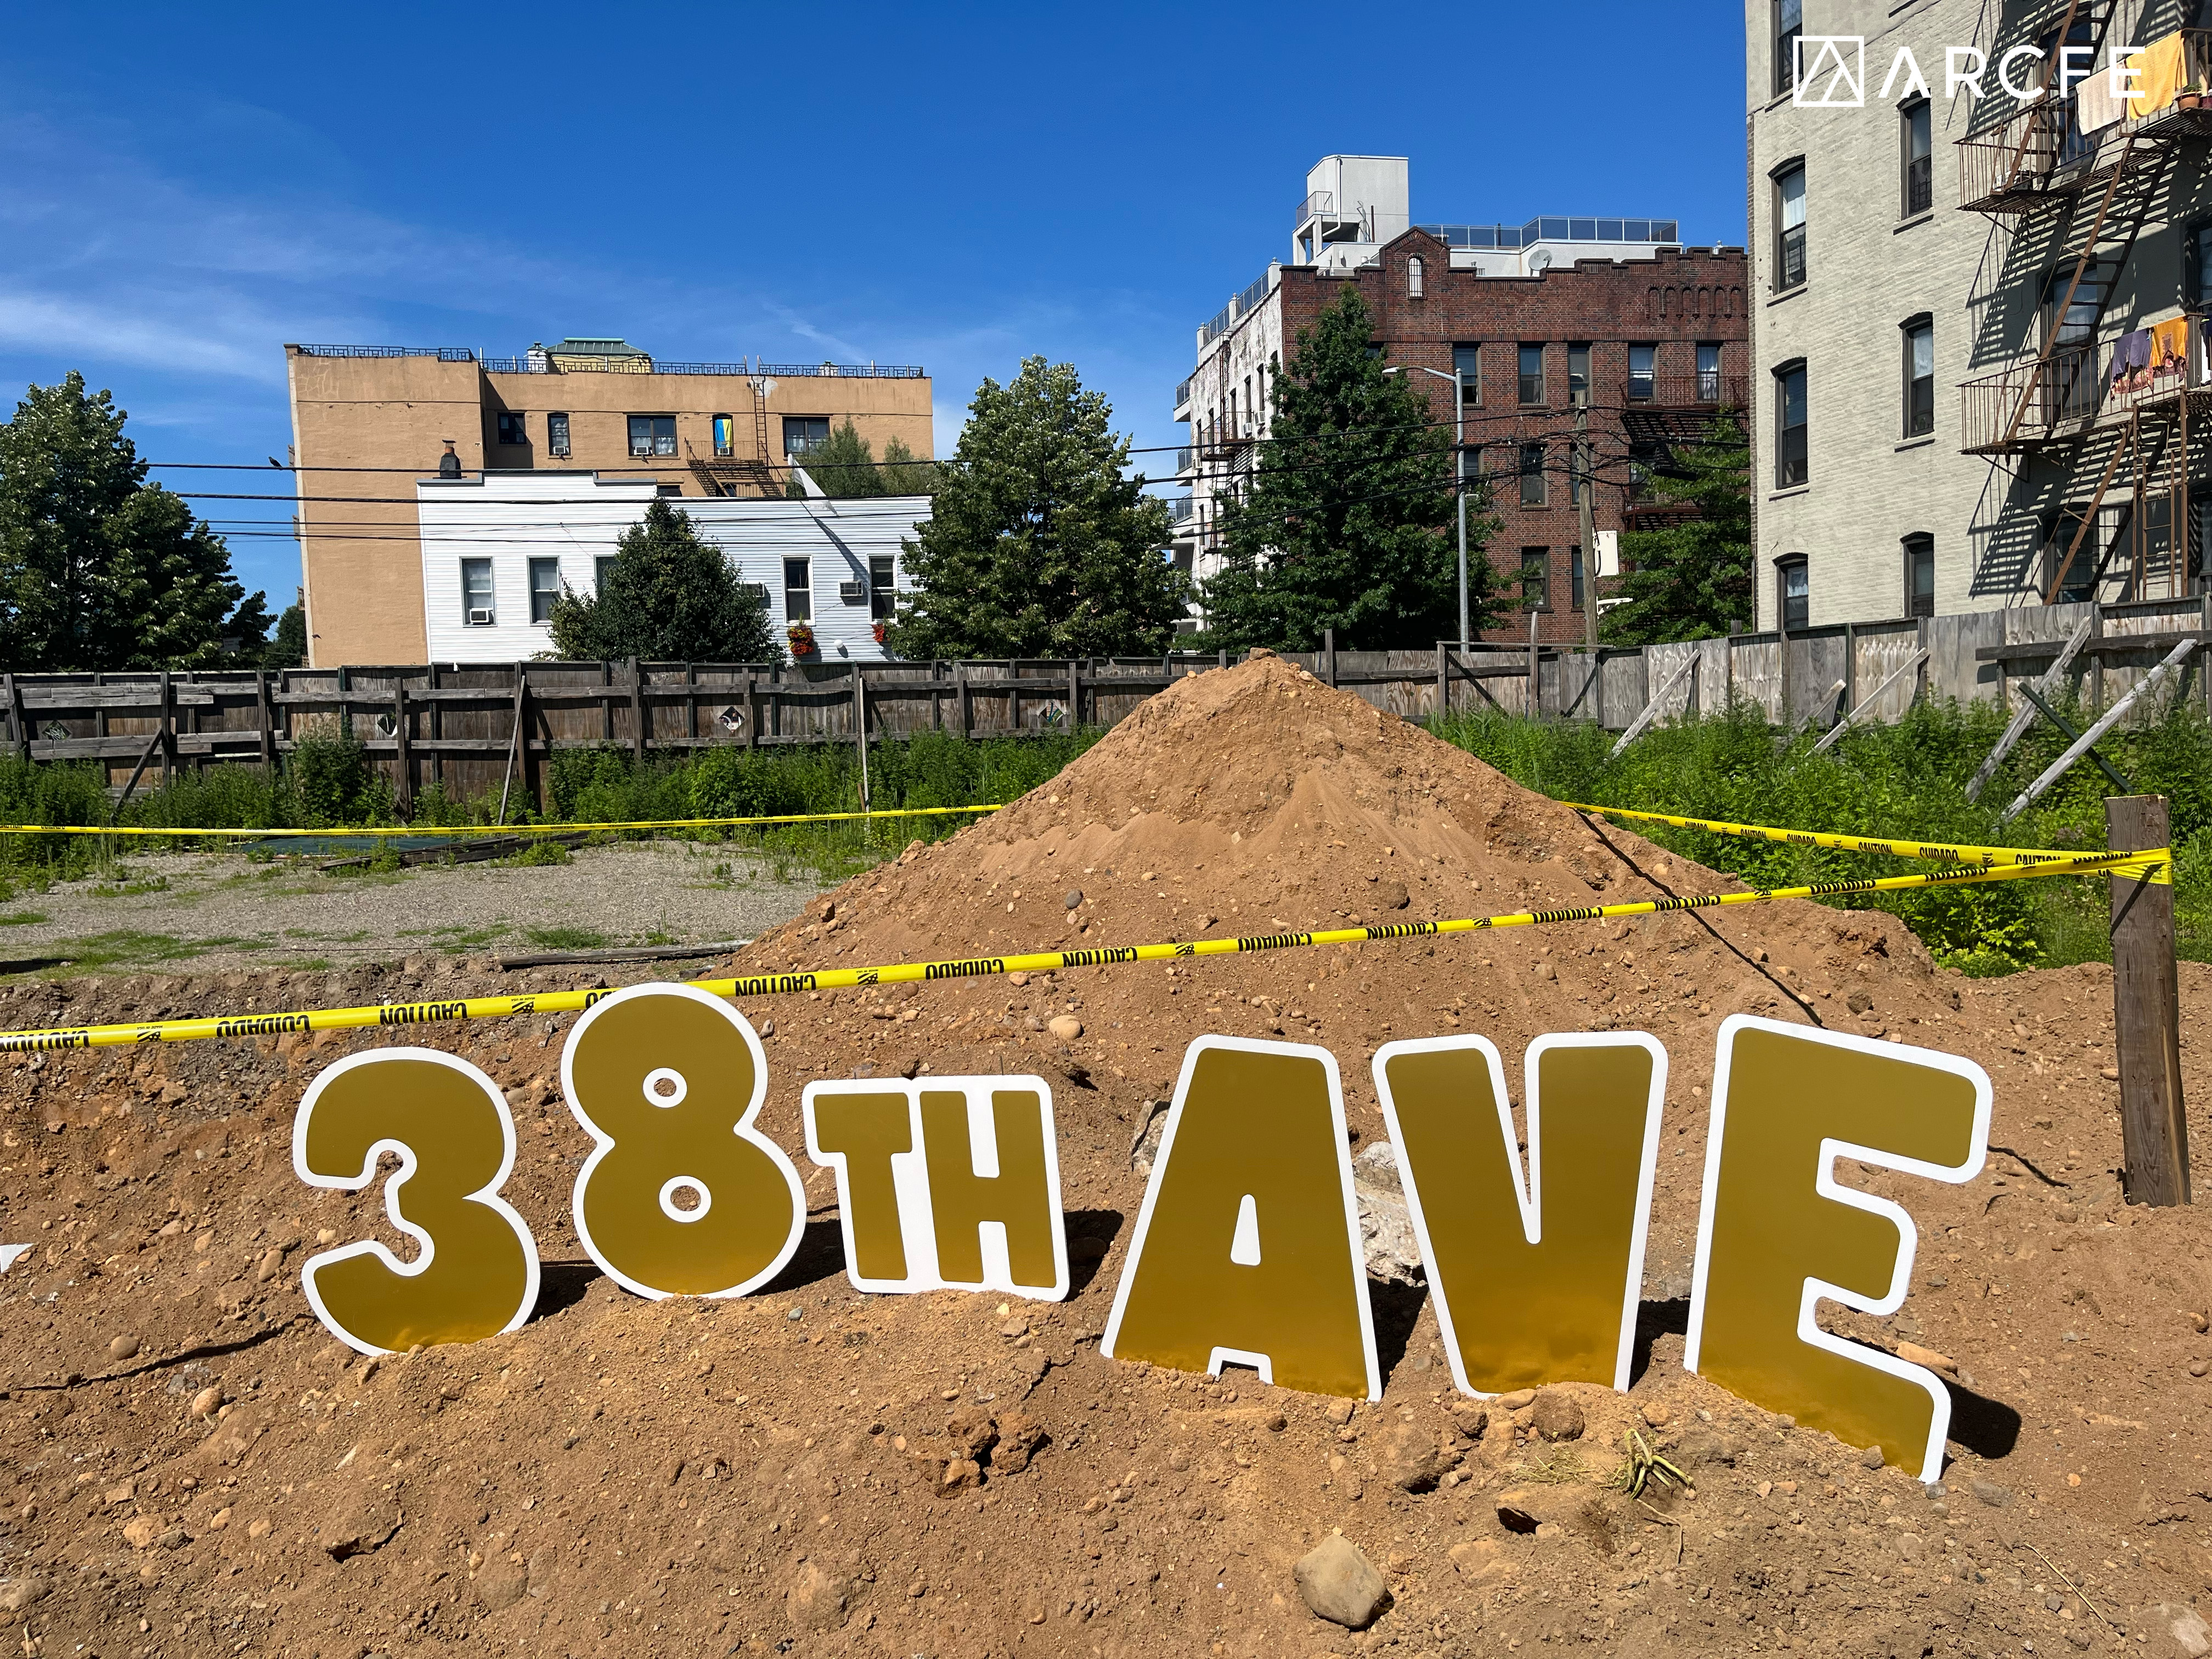 Quận Queens giàu tiềm năng đầu tư BĐS - Ảnh: Lễ khởi công toàn nhà 38th AVE